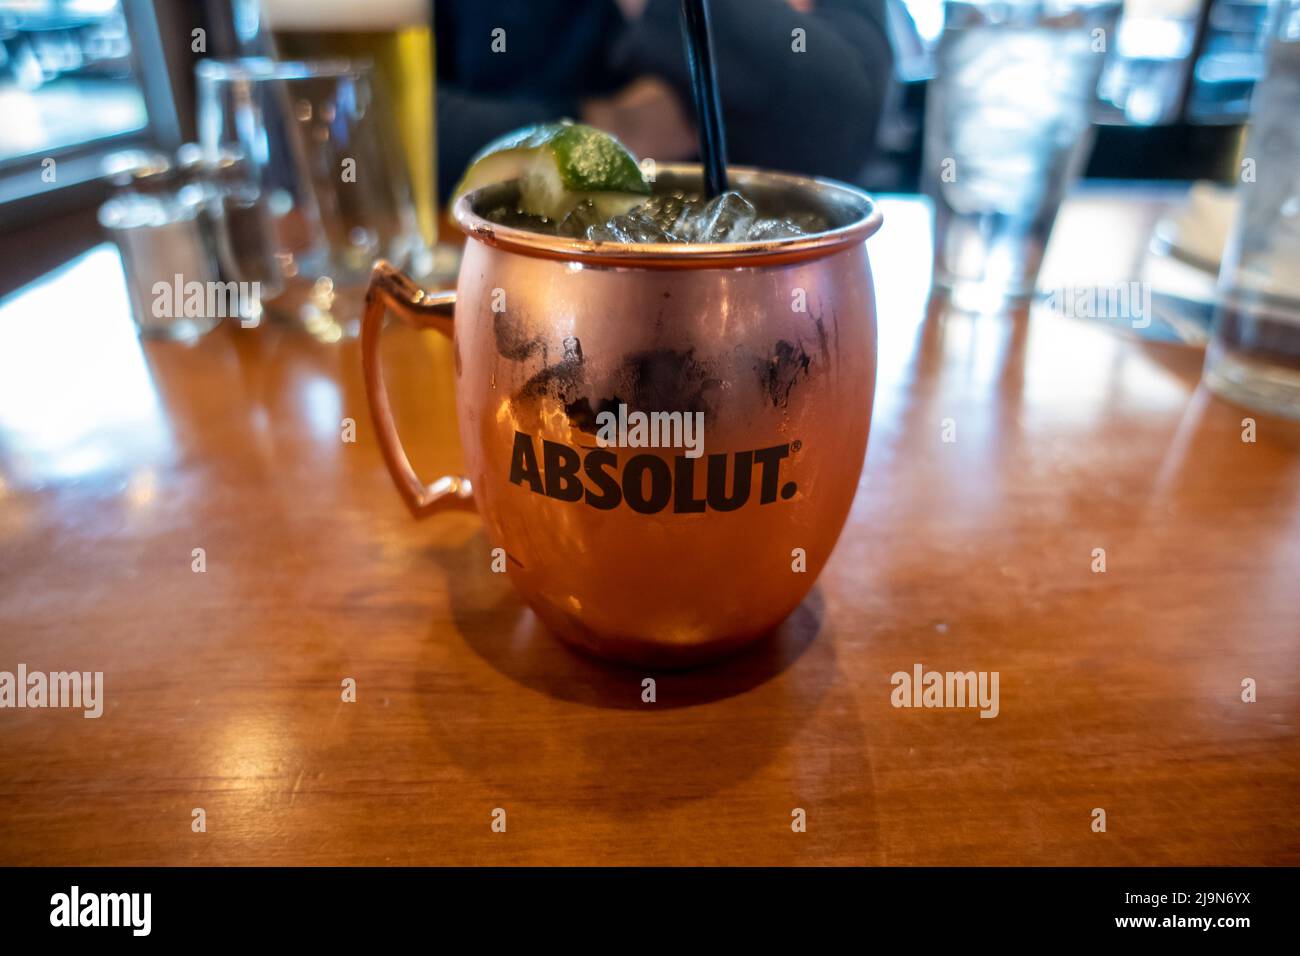 Seattle, WA USA - circa Maggio 2022: Focalizzazione selettiva su una bevanda alcolica Mule di Mosca in una tazza di rame su un tavolo all'interno di un ristorante. Foto Stock